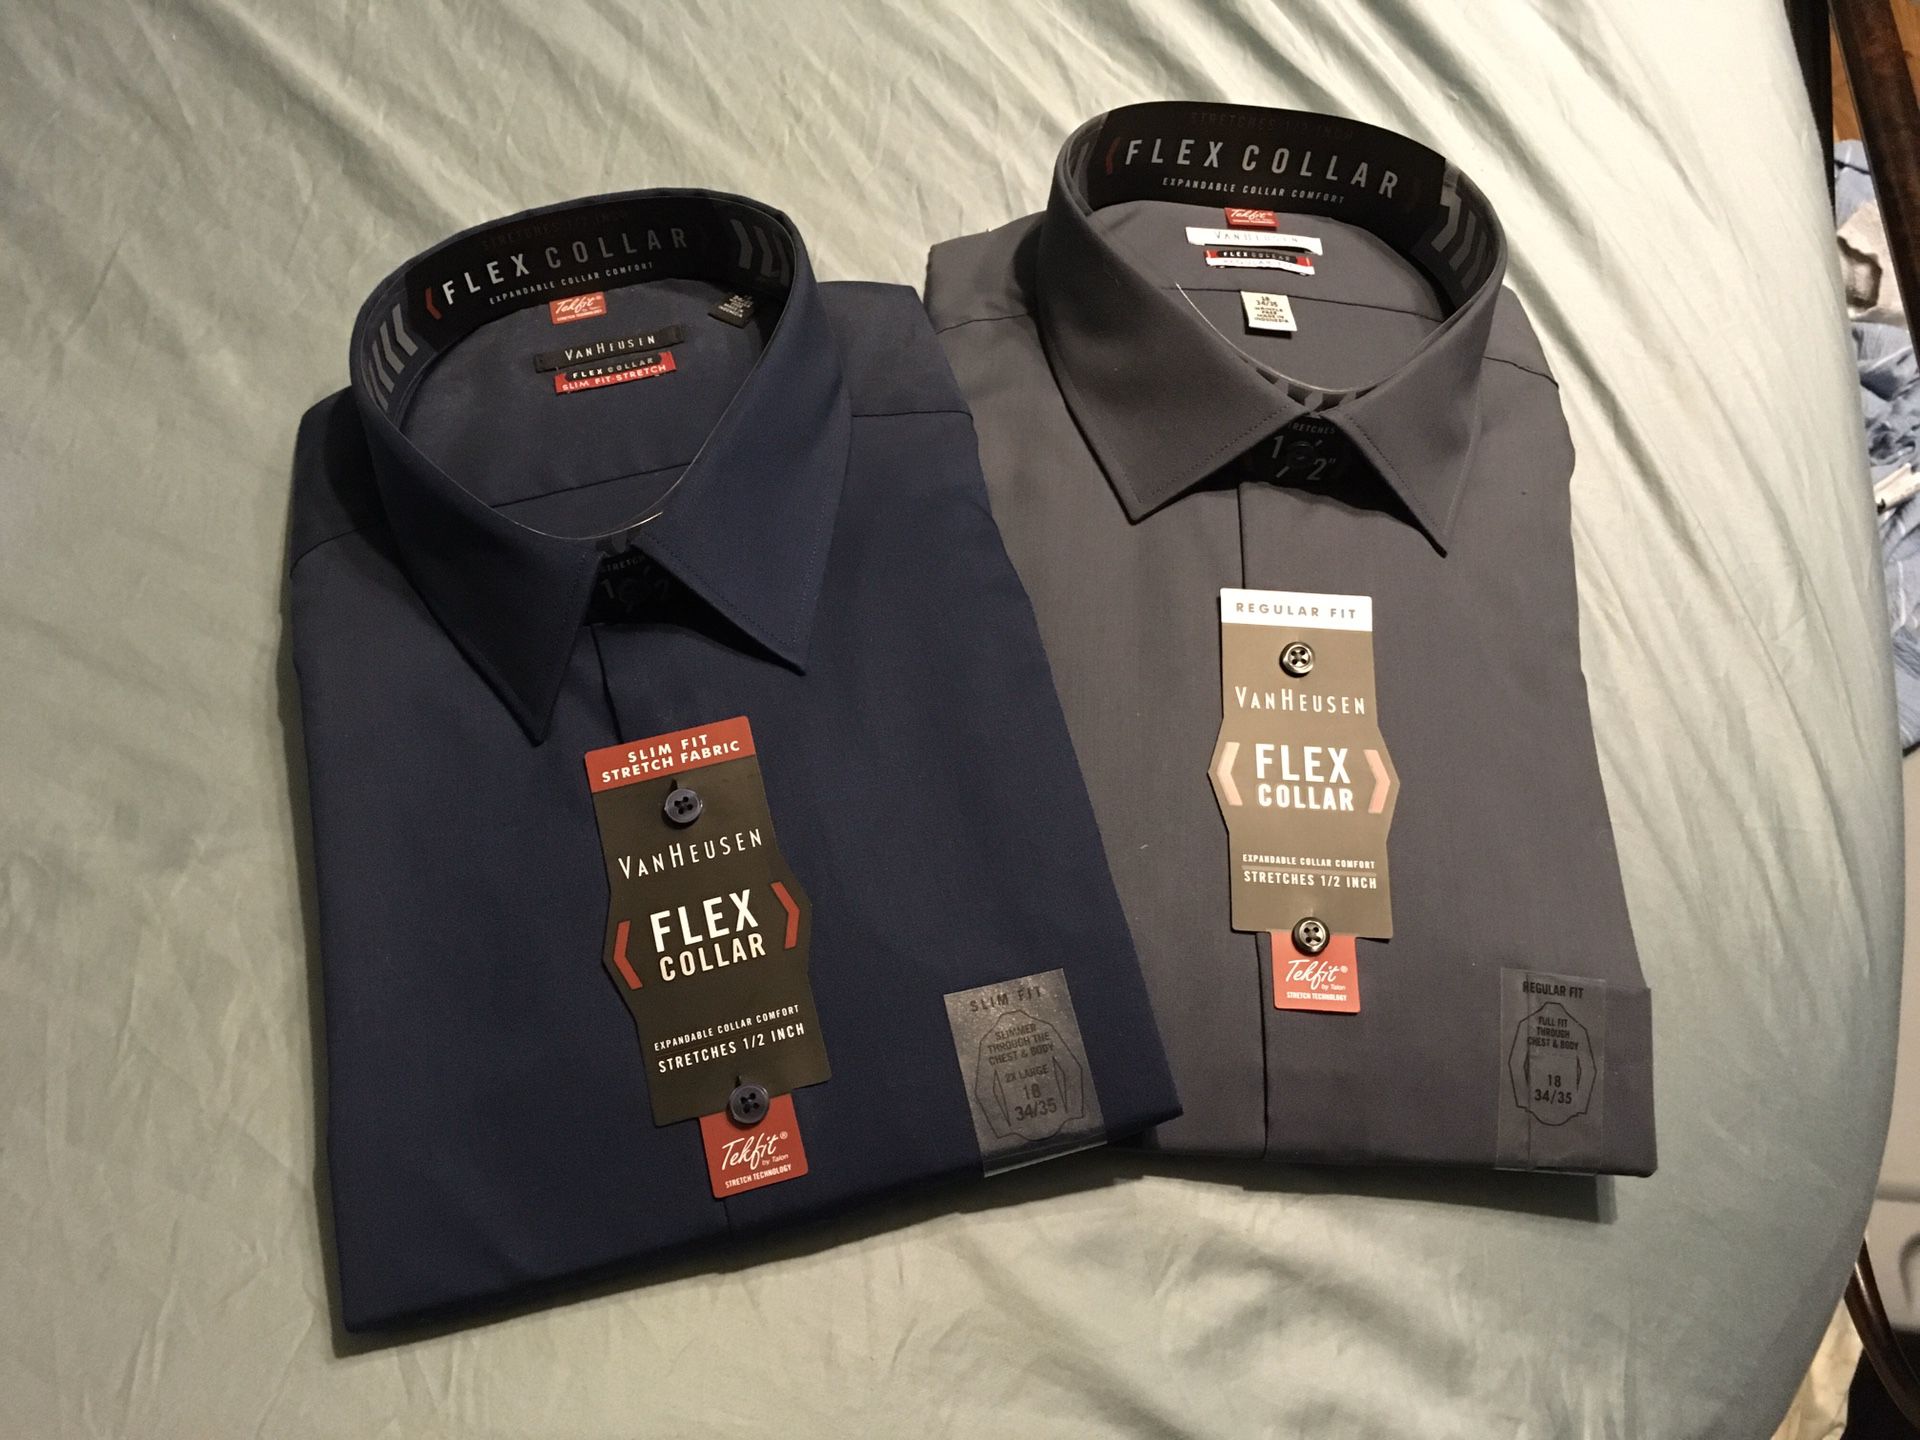 2 Brand new Dress shirts...Van Heusen flex collar 18 34/35 night blue & charcoal